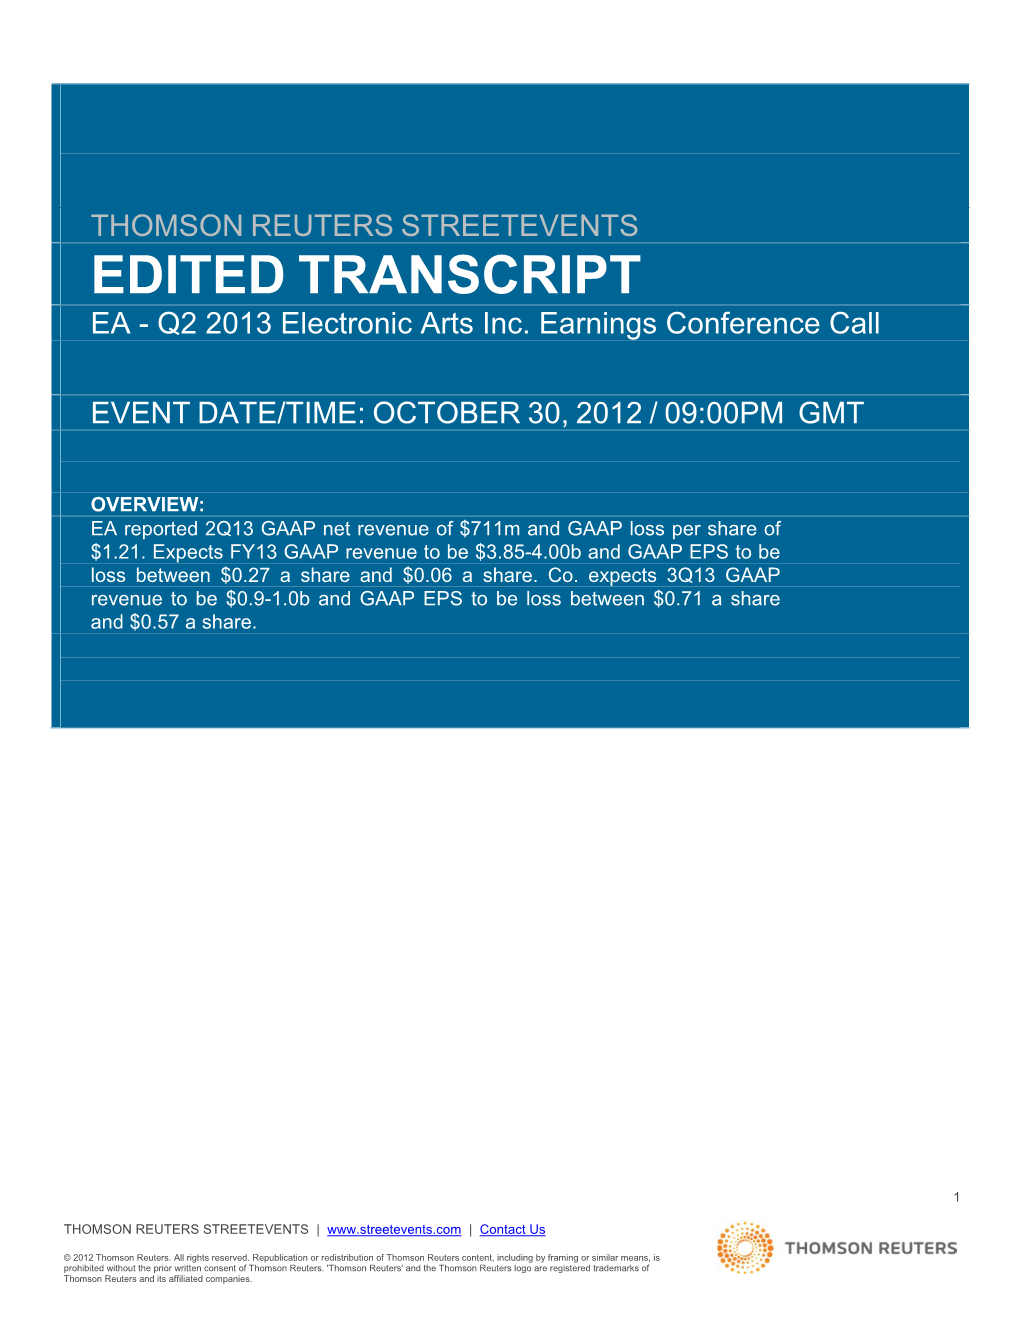 EDITED TRANSCRIPT EA - Q2 2013 Electronic Arts Inc